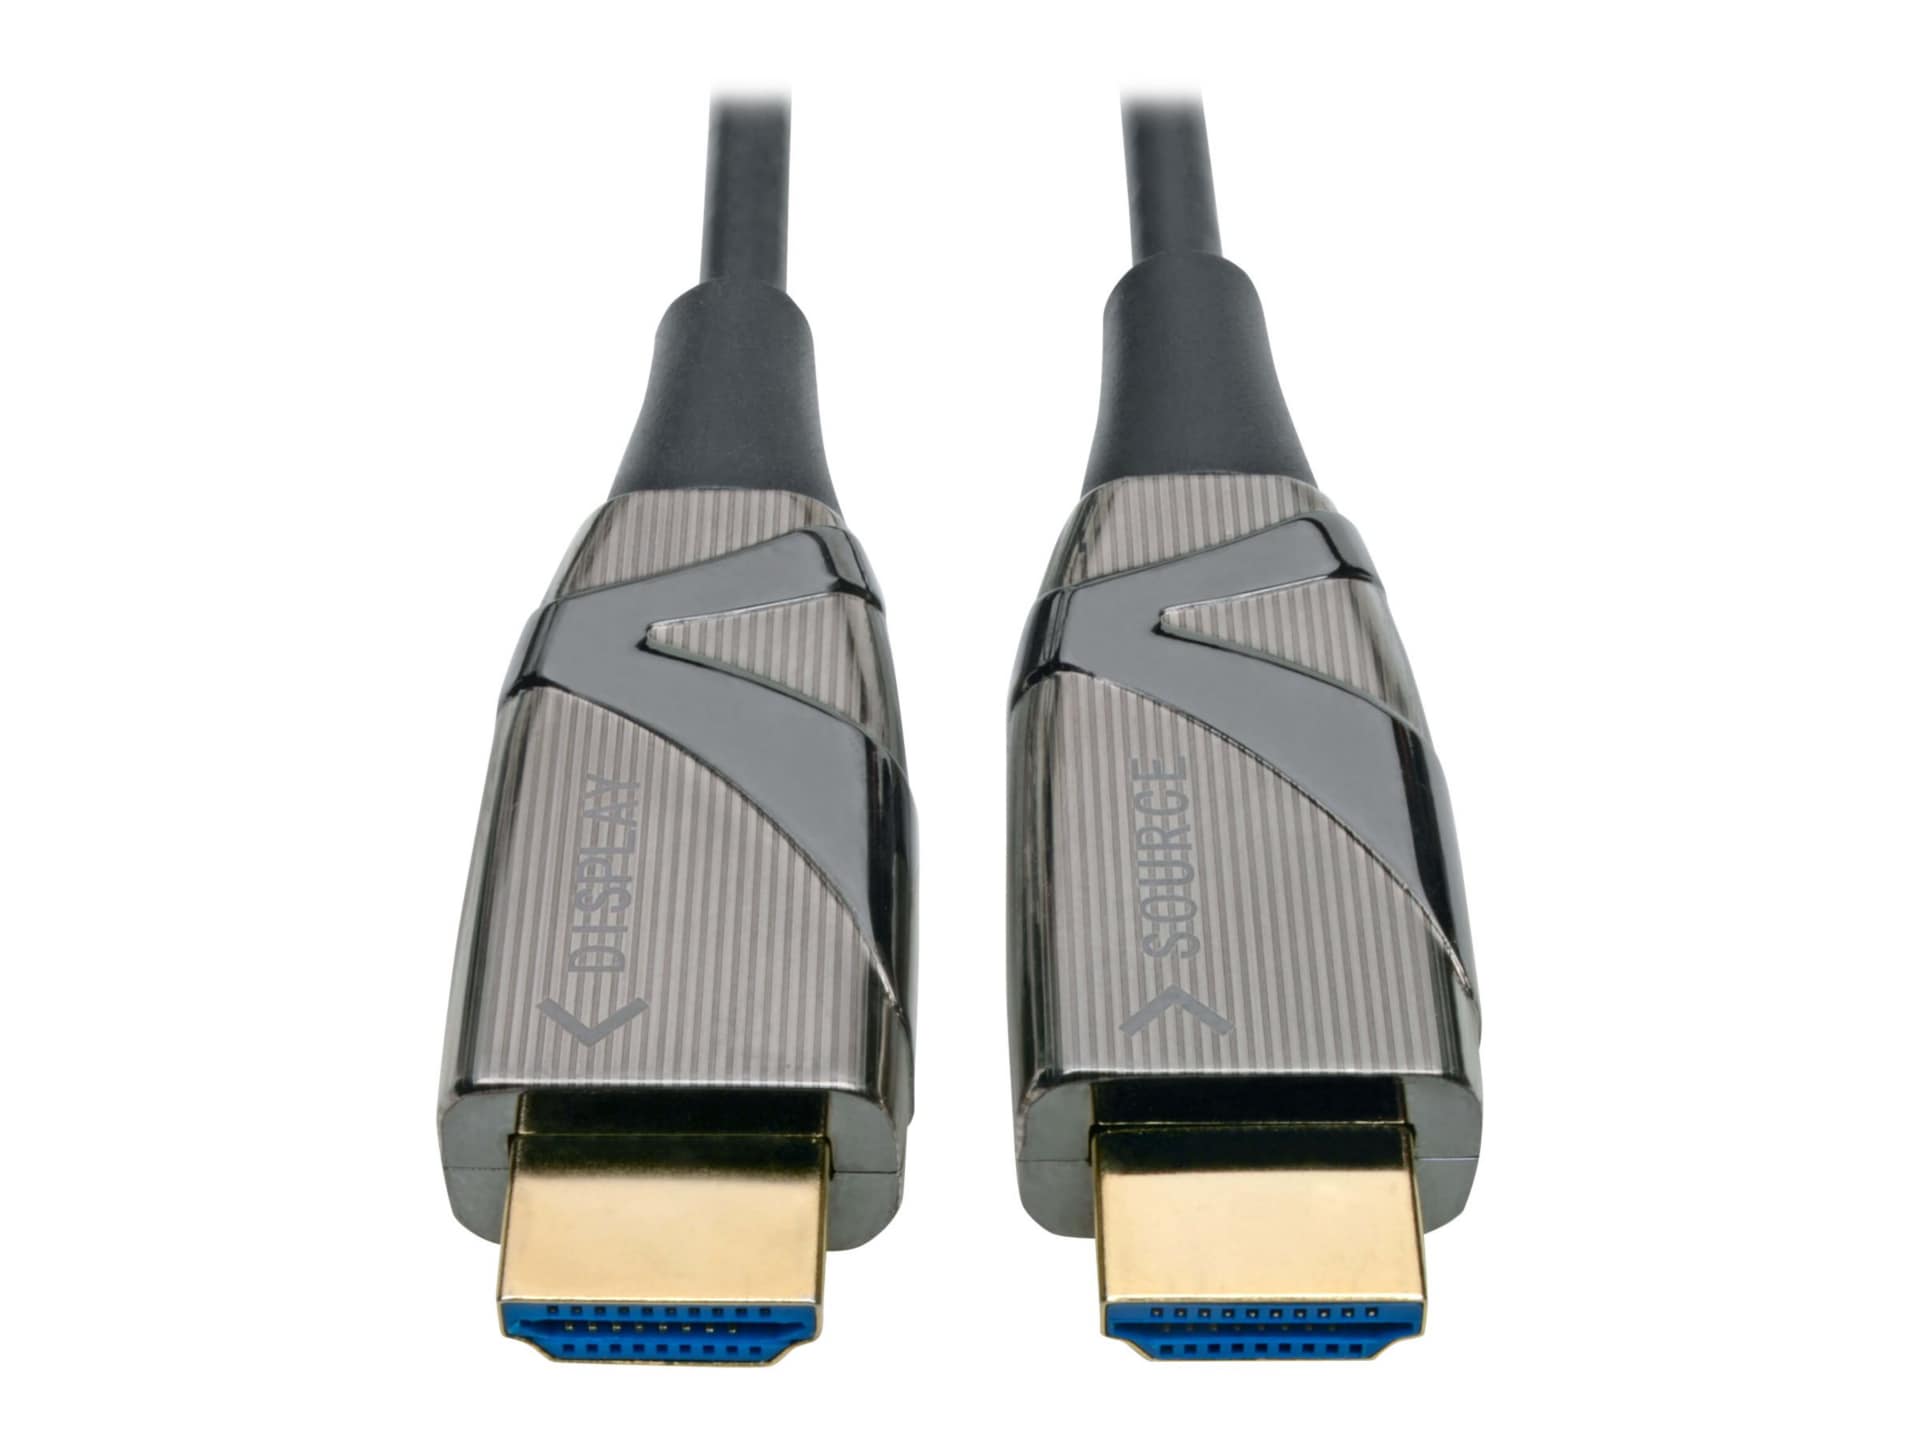 HDMI ou câble optique?